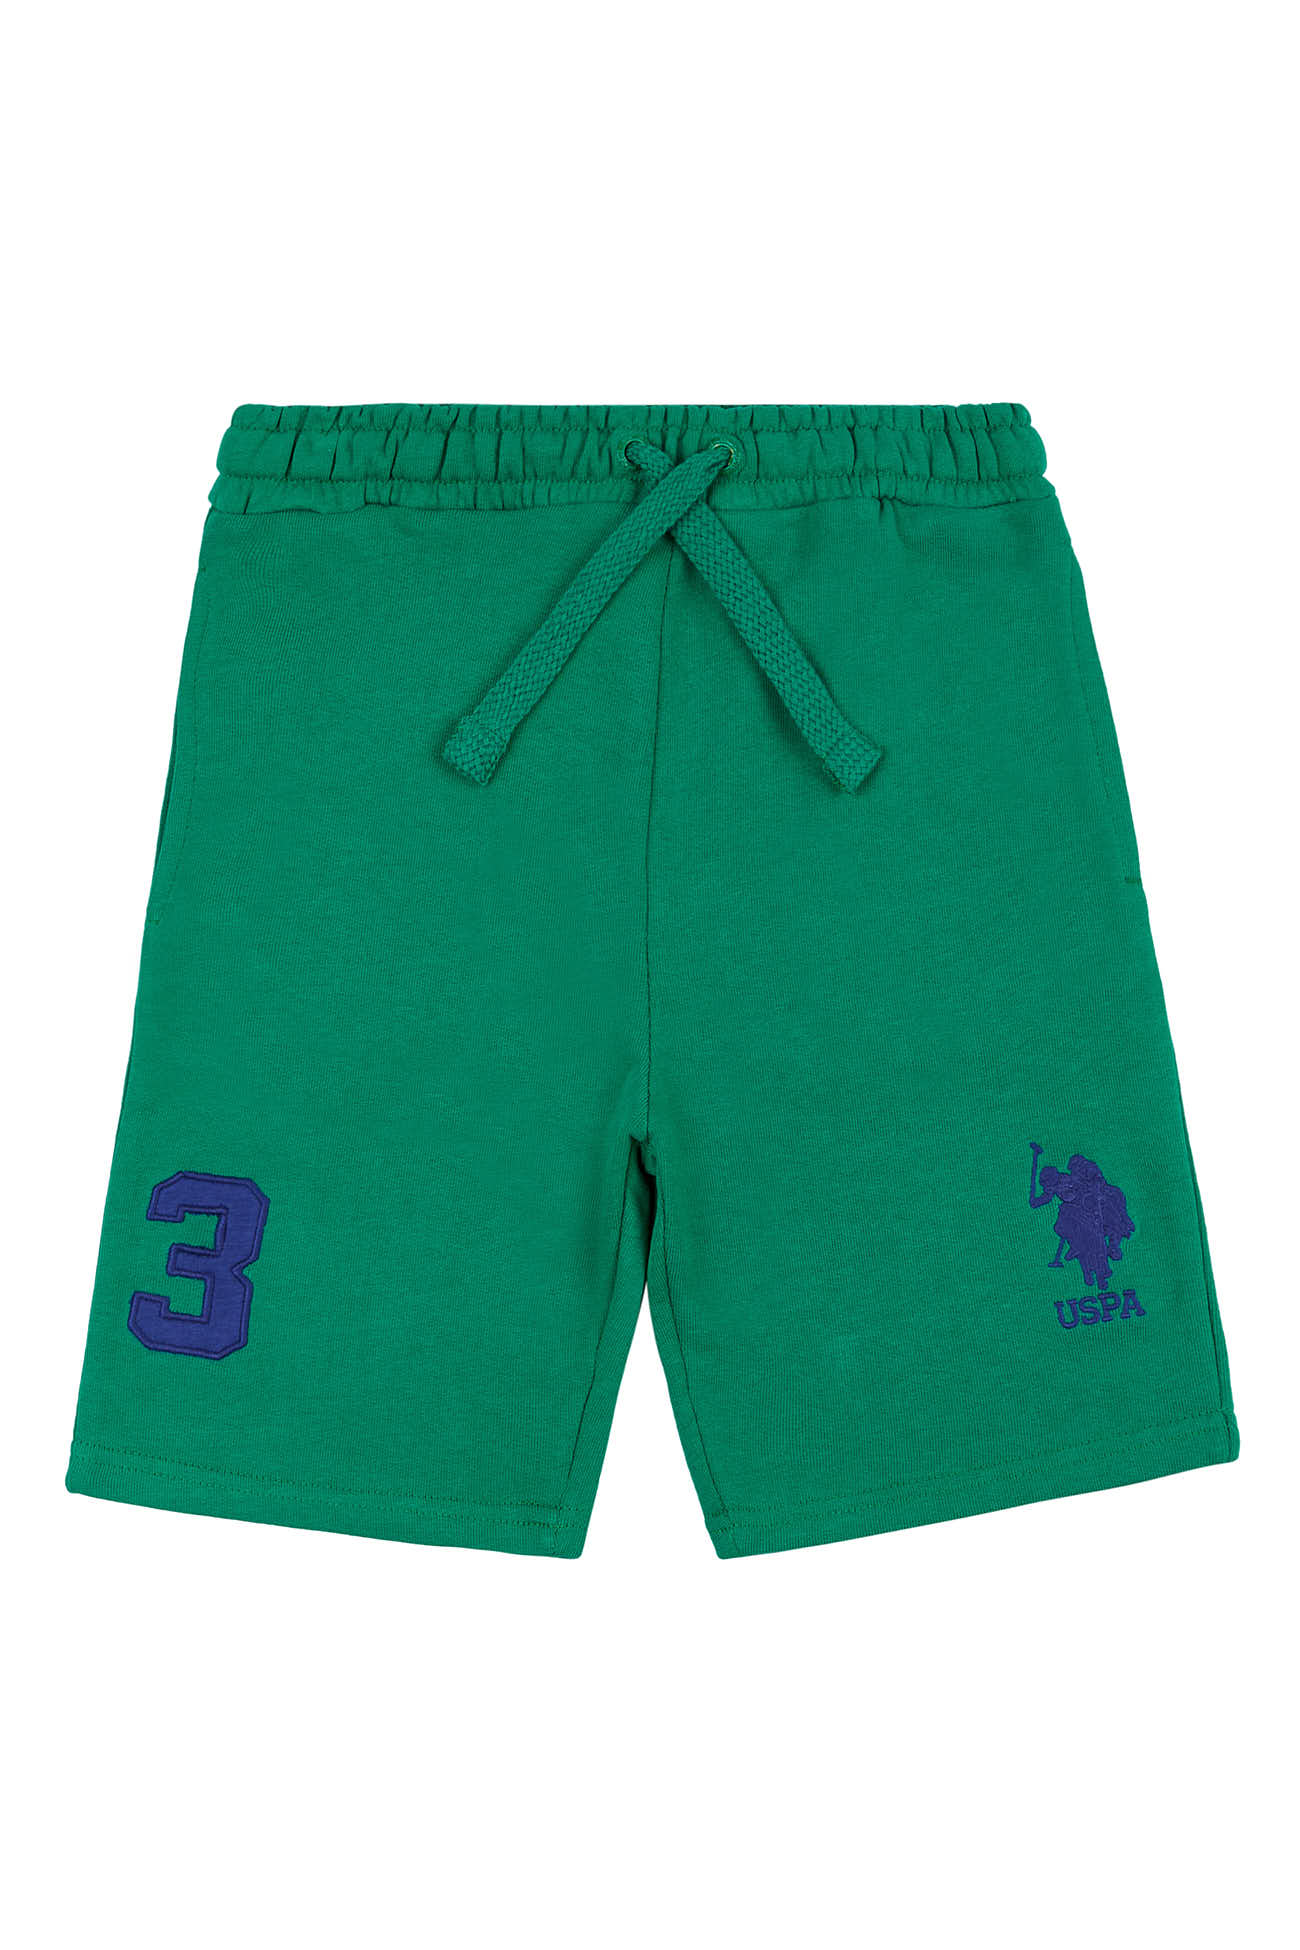 U.S. Polo Assn. Boys Player 3 Sweat Shorts in Ultramarine Green